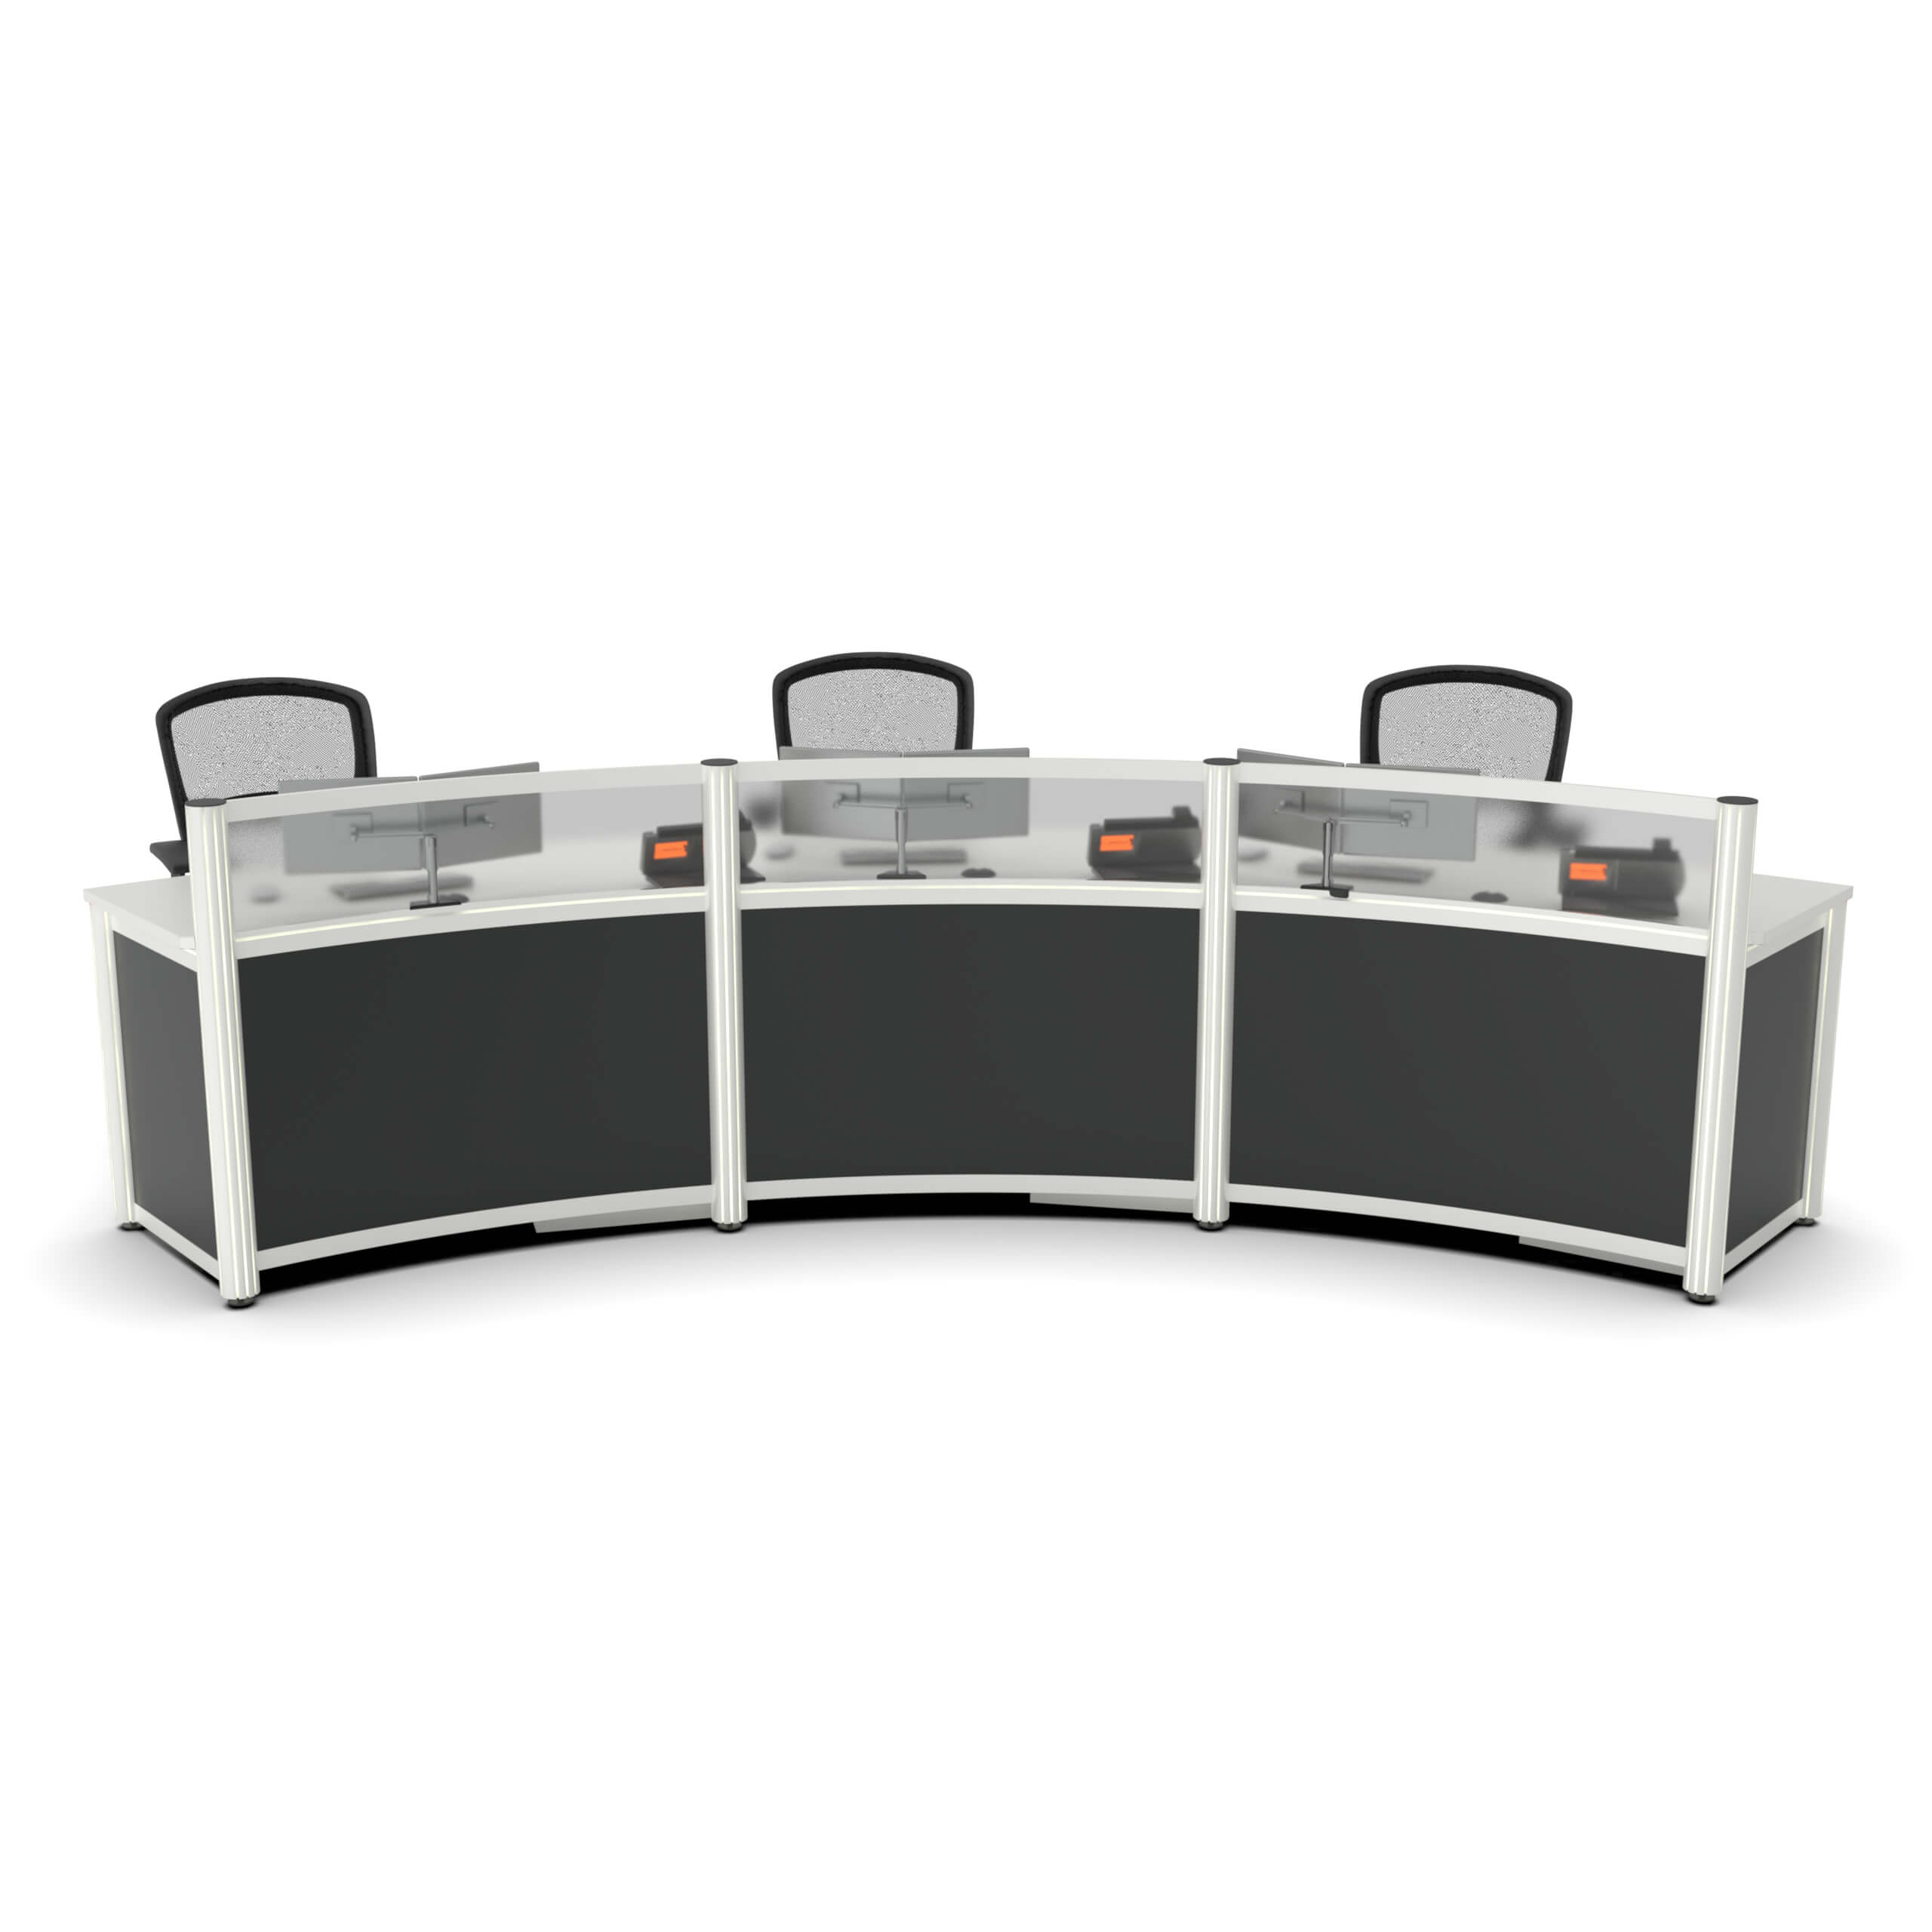 two-person-reception-desk-2-person-reception-desk-CUB-PBR008-XX-XX-ULF.jpg